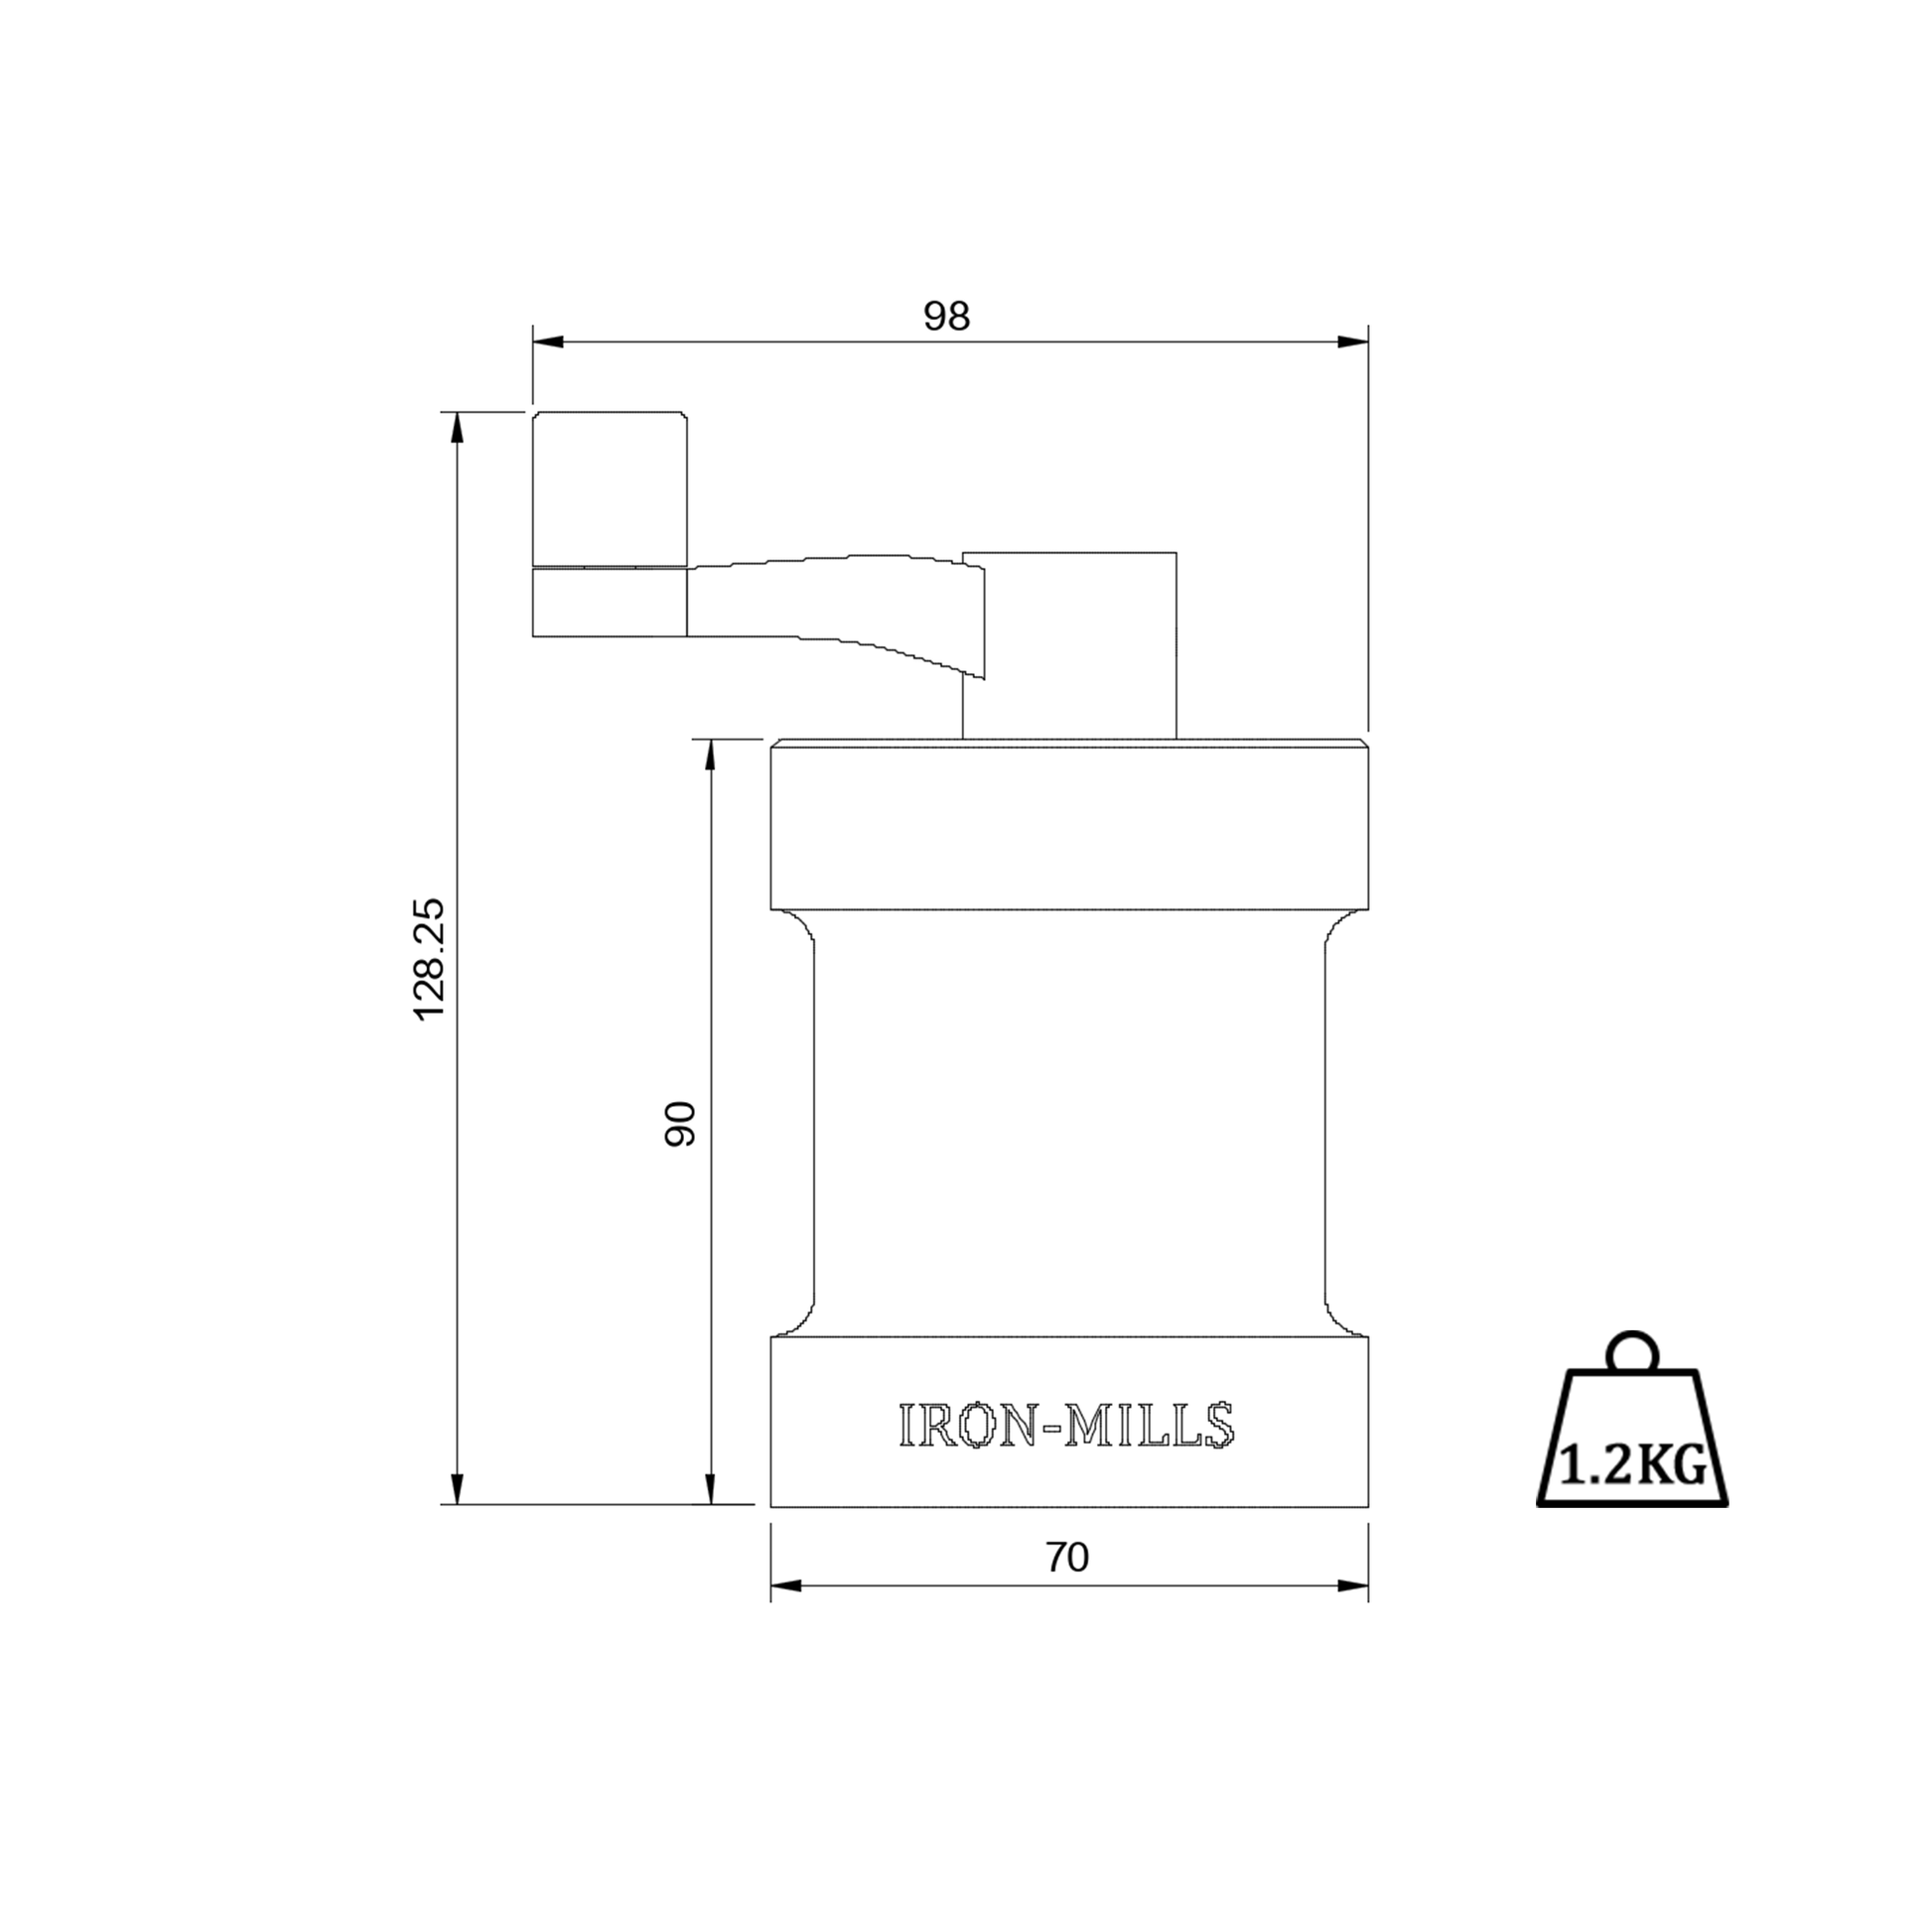 Dimensioned Drawing Iron-Mills Salt & Pepper Mills